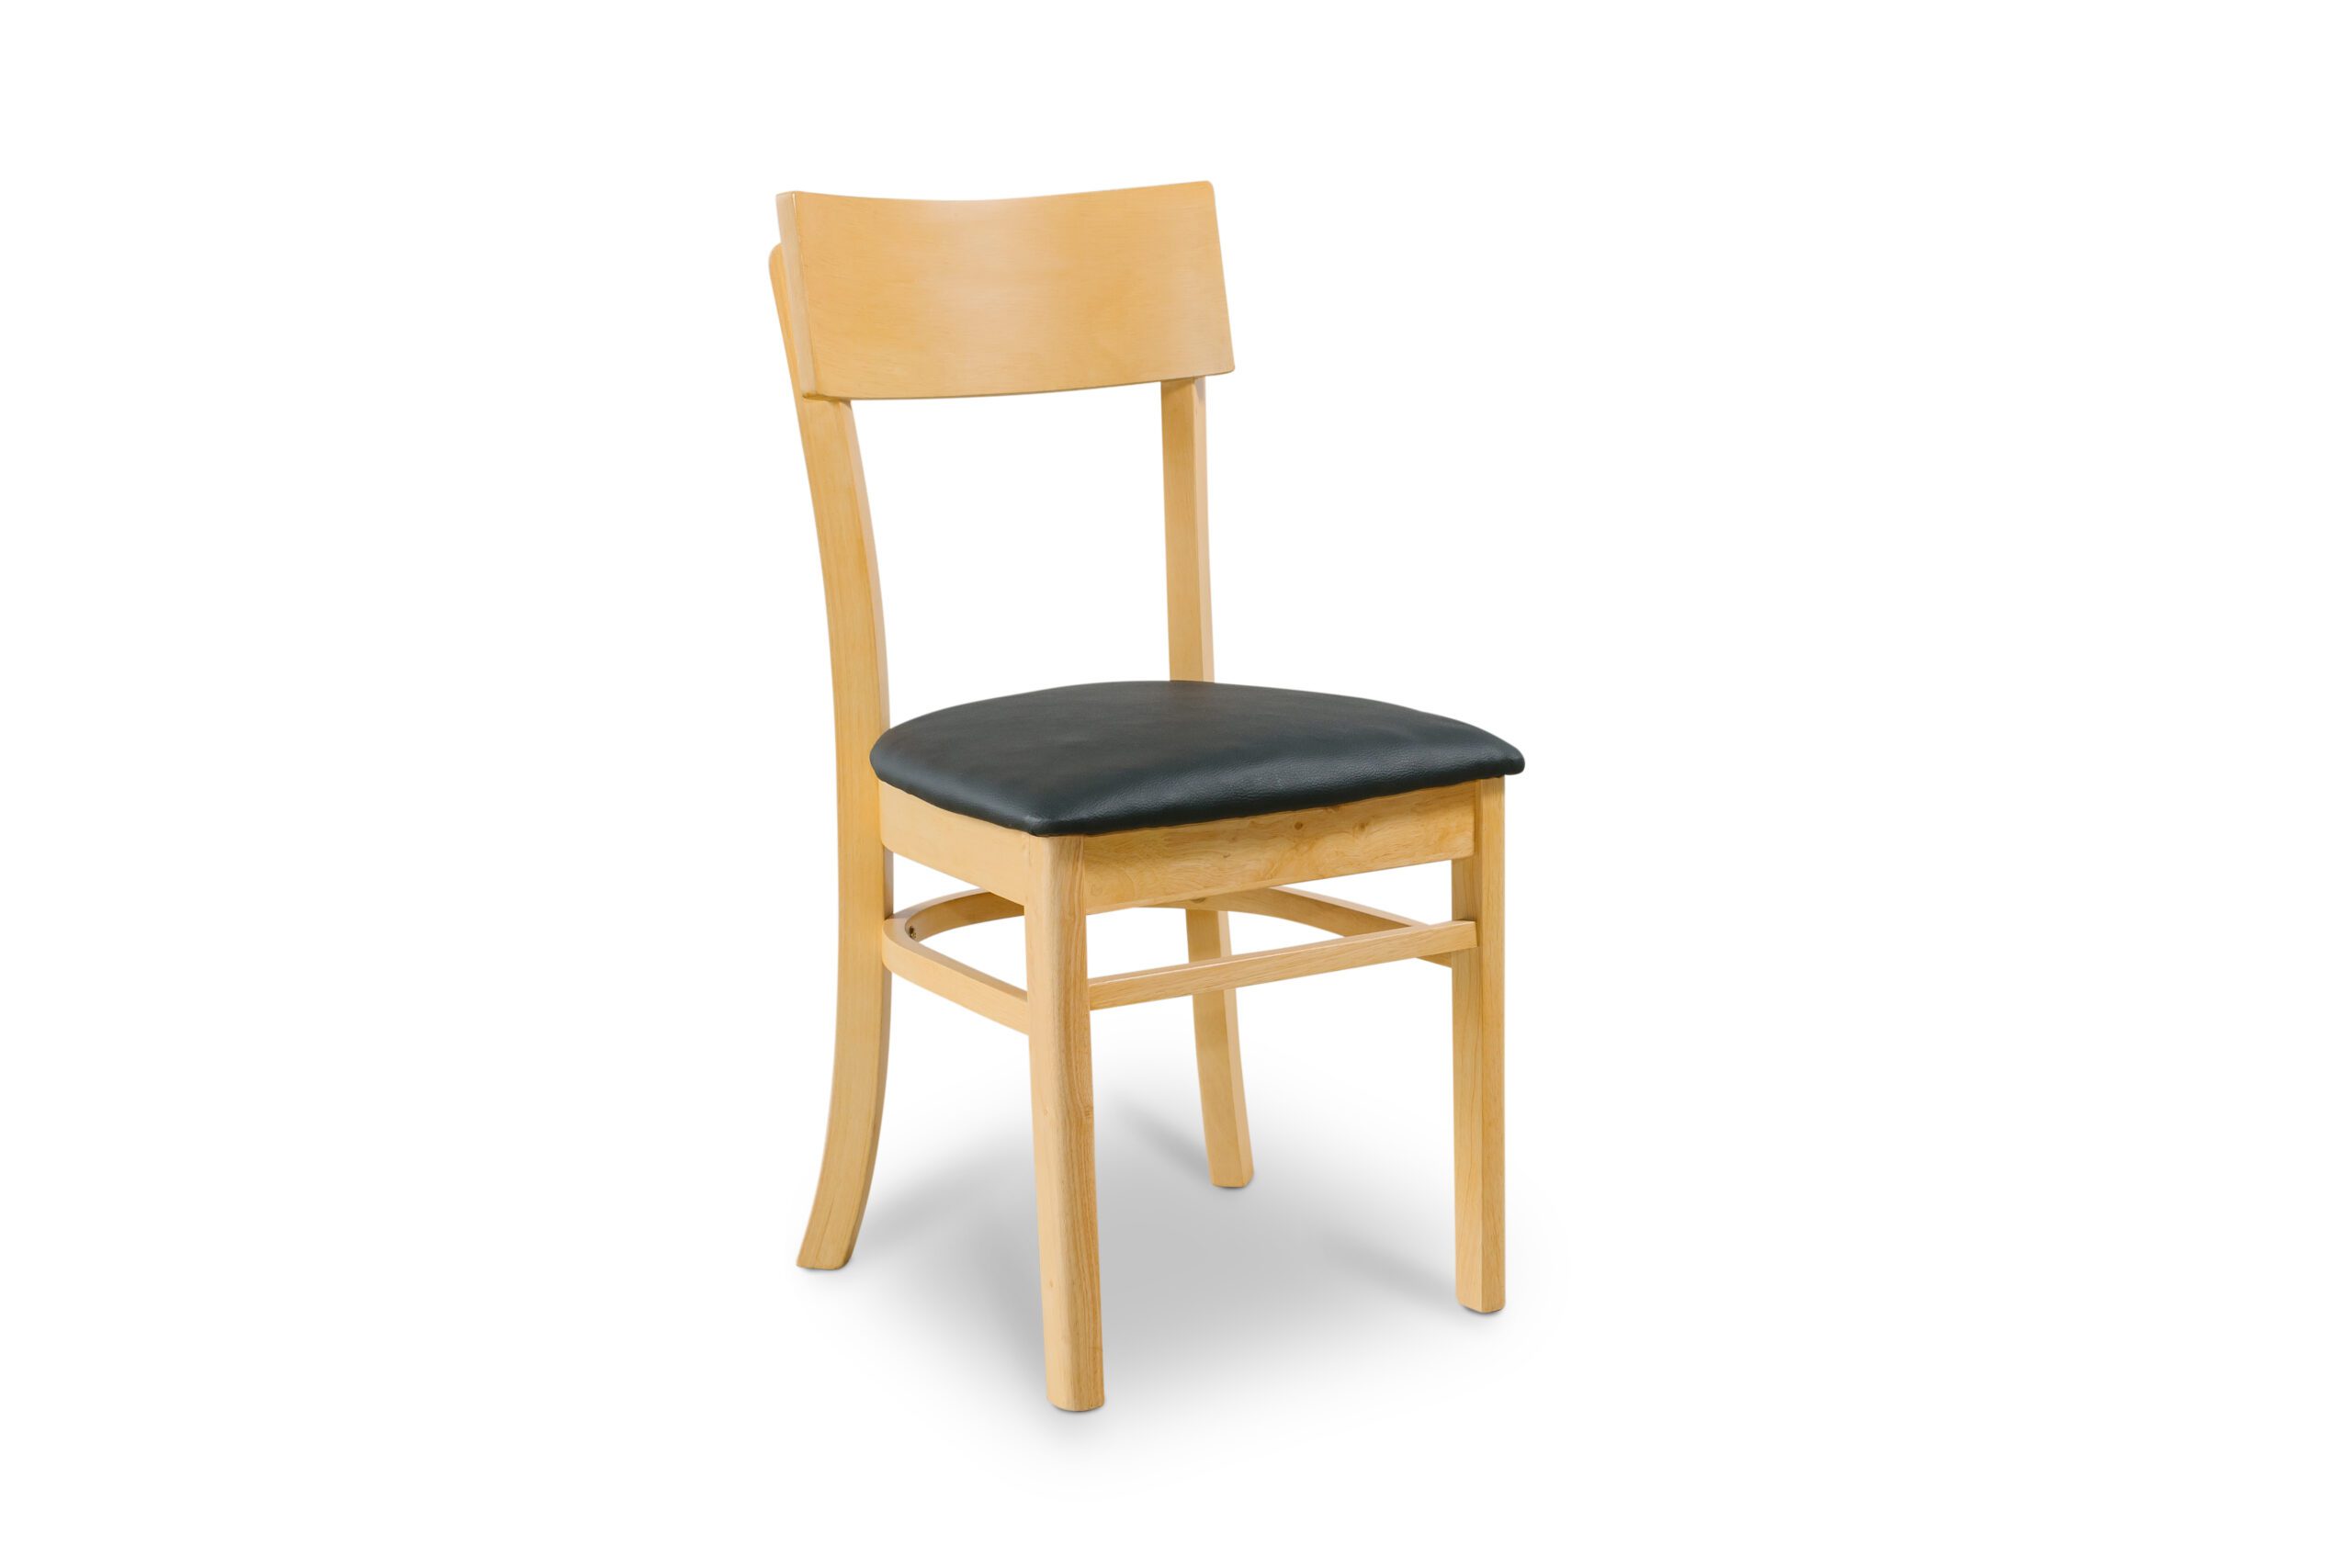 Mint chair